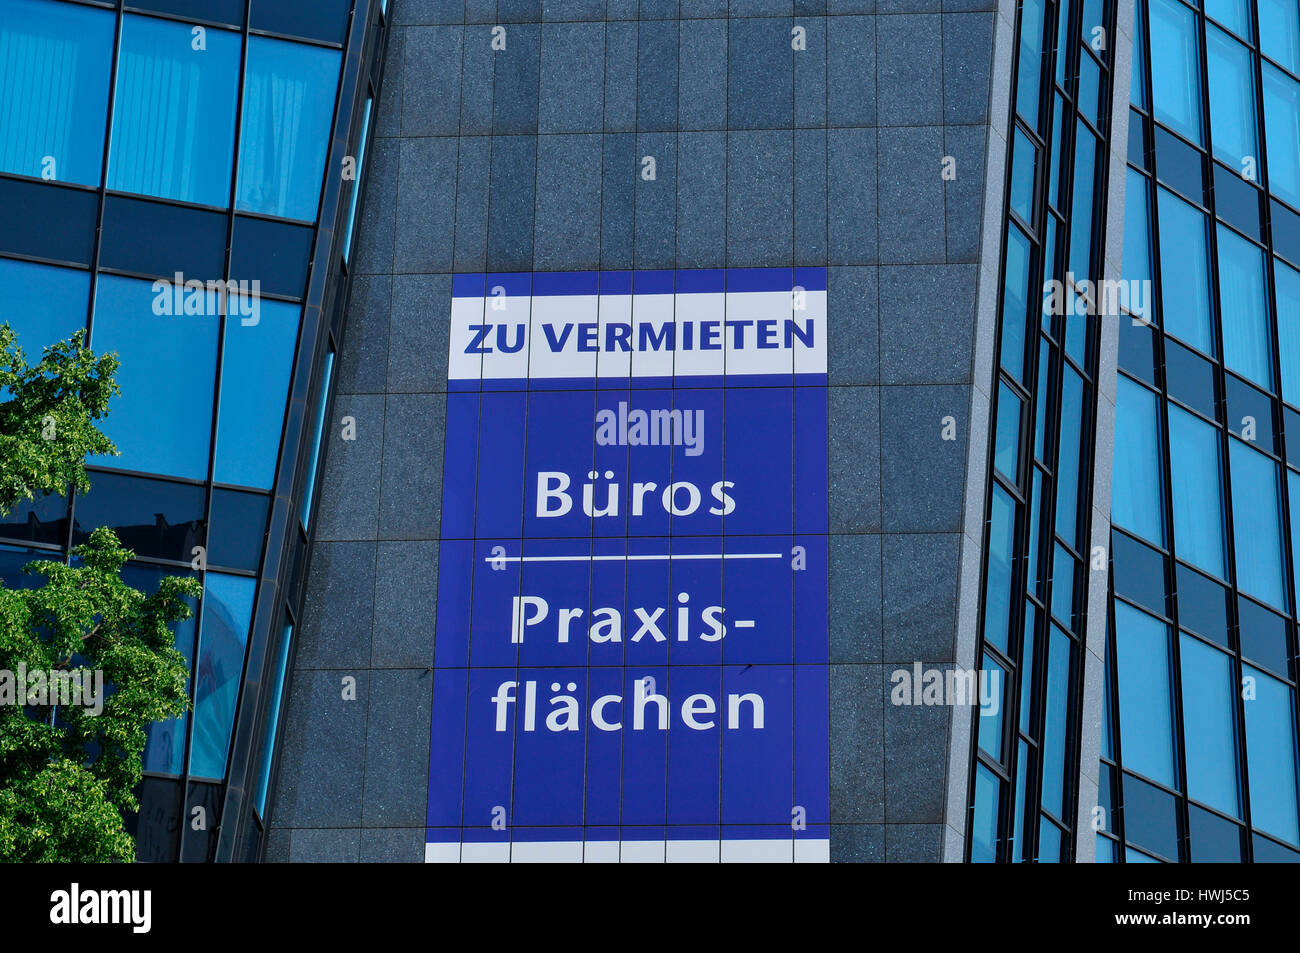 Vermietung, Bueroflaechen, Hauptstrasse, Friedenau, Berlin, Deutschland Stock Photo